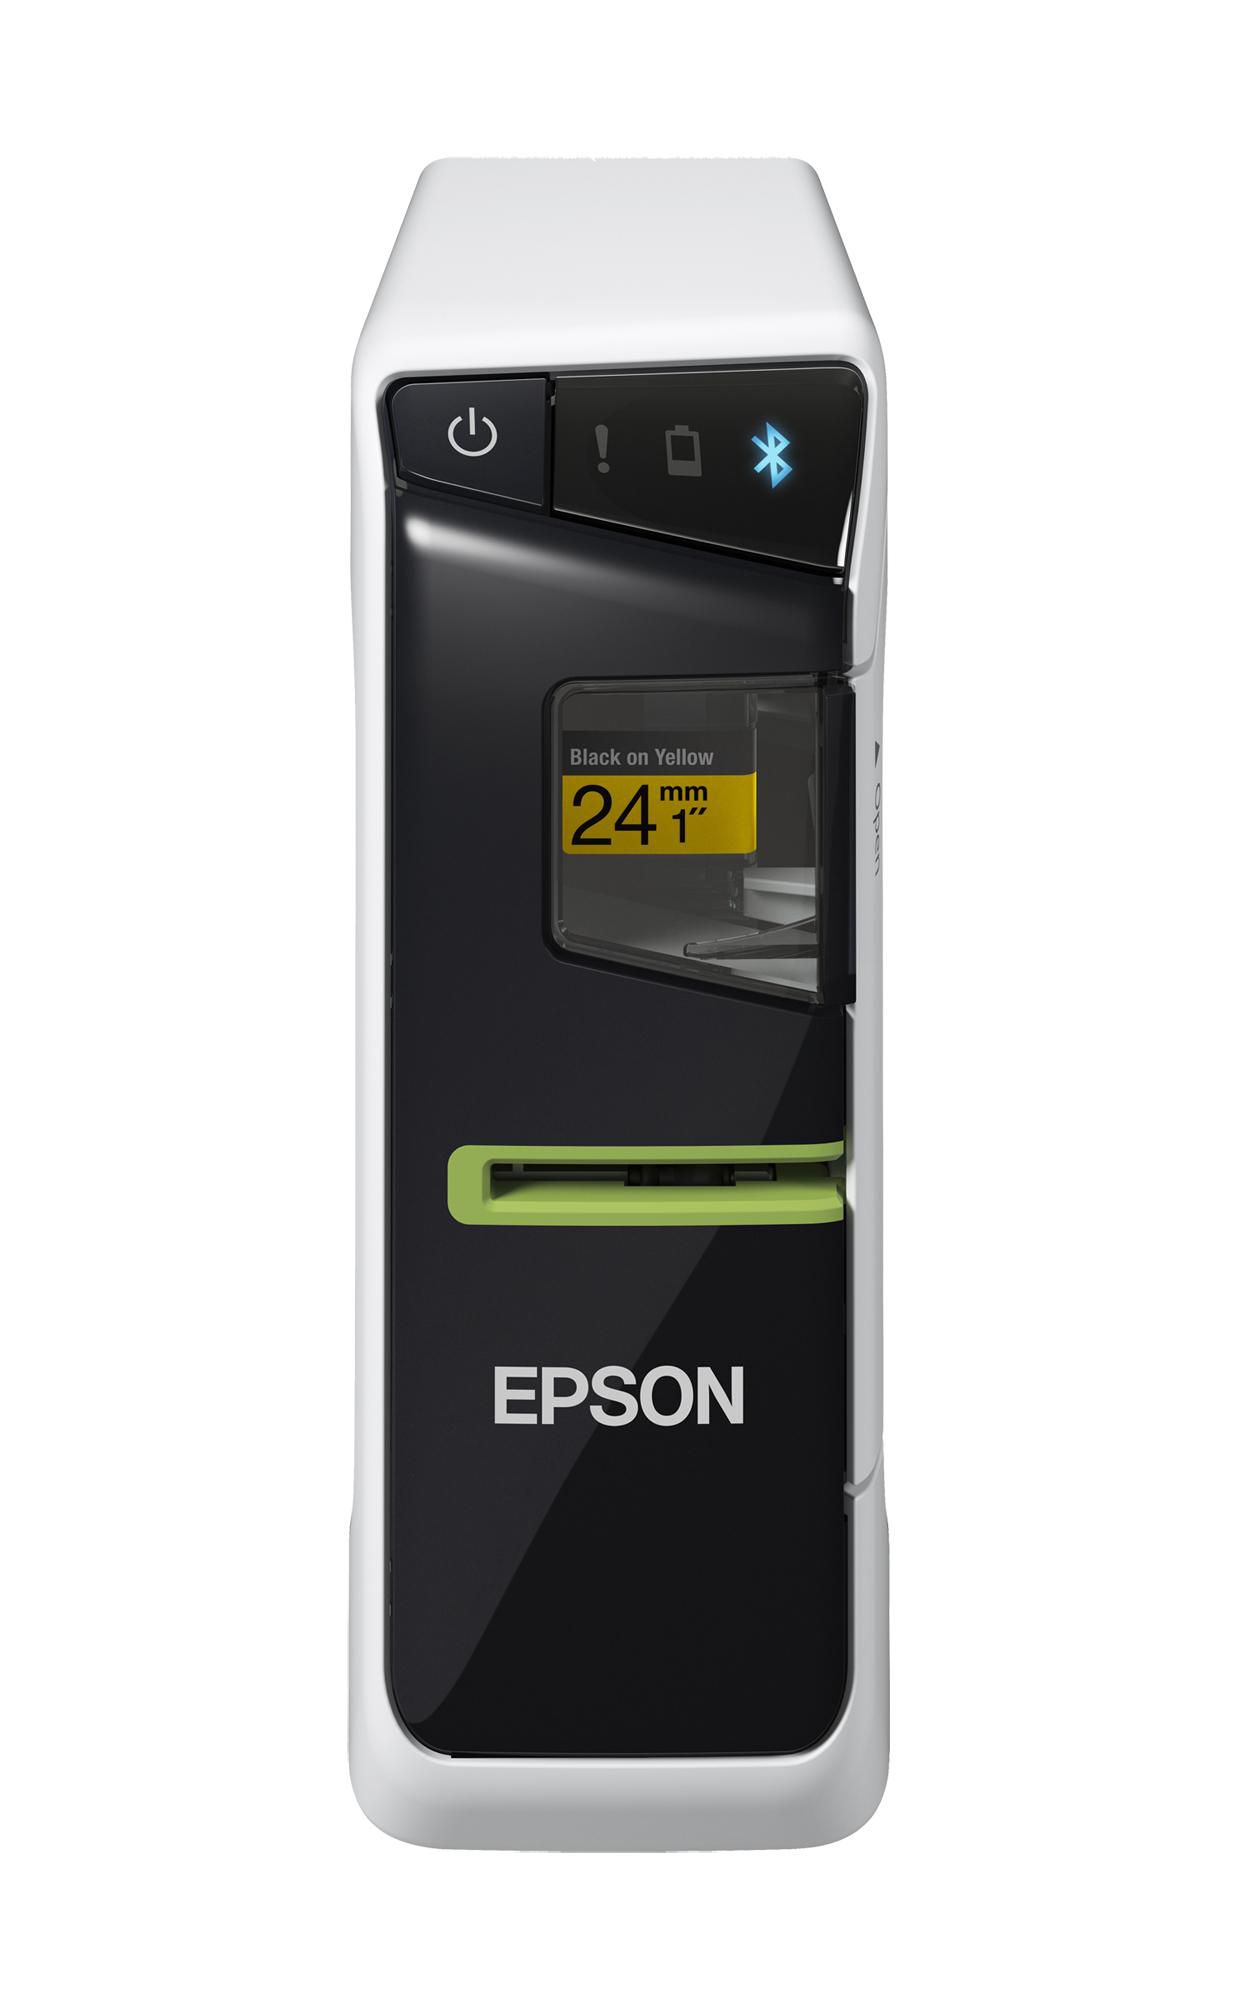 EPSON LW-600P